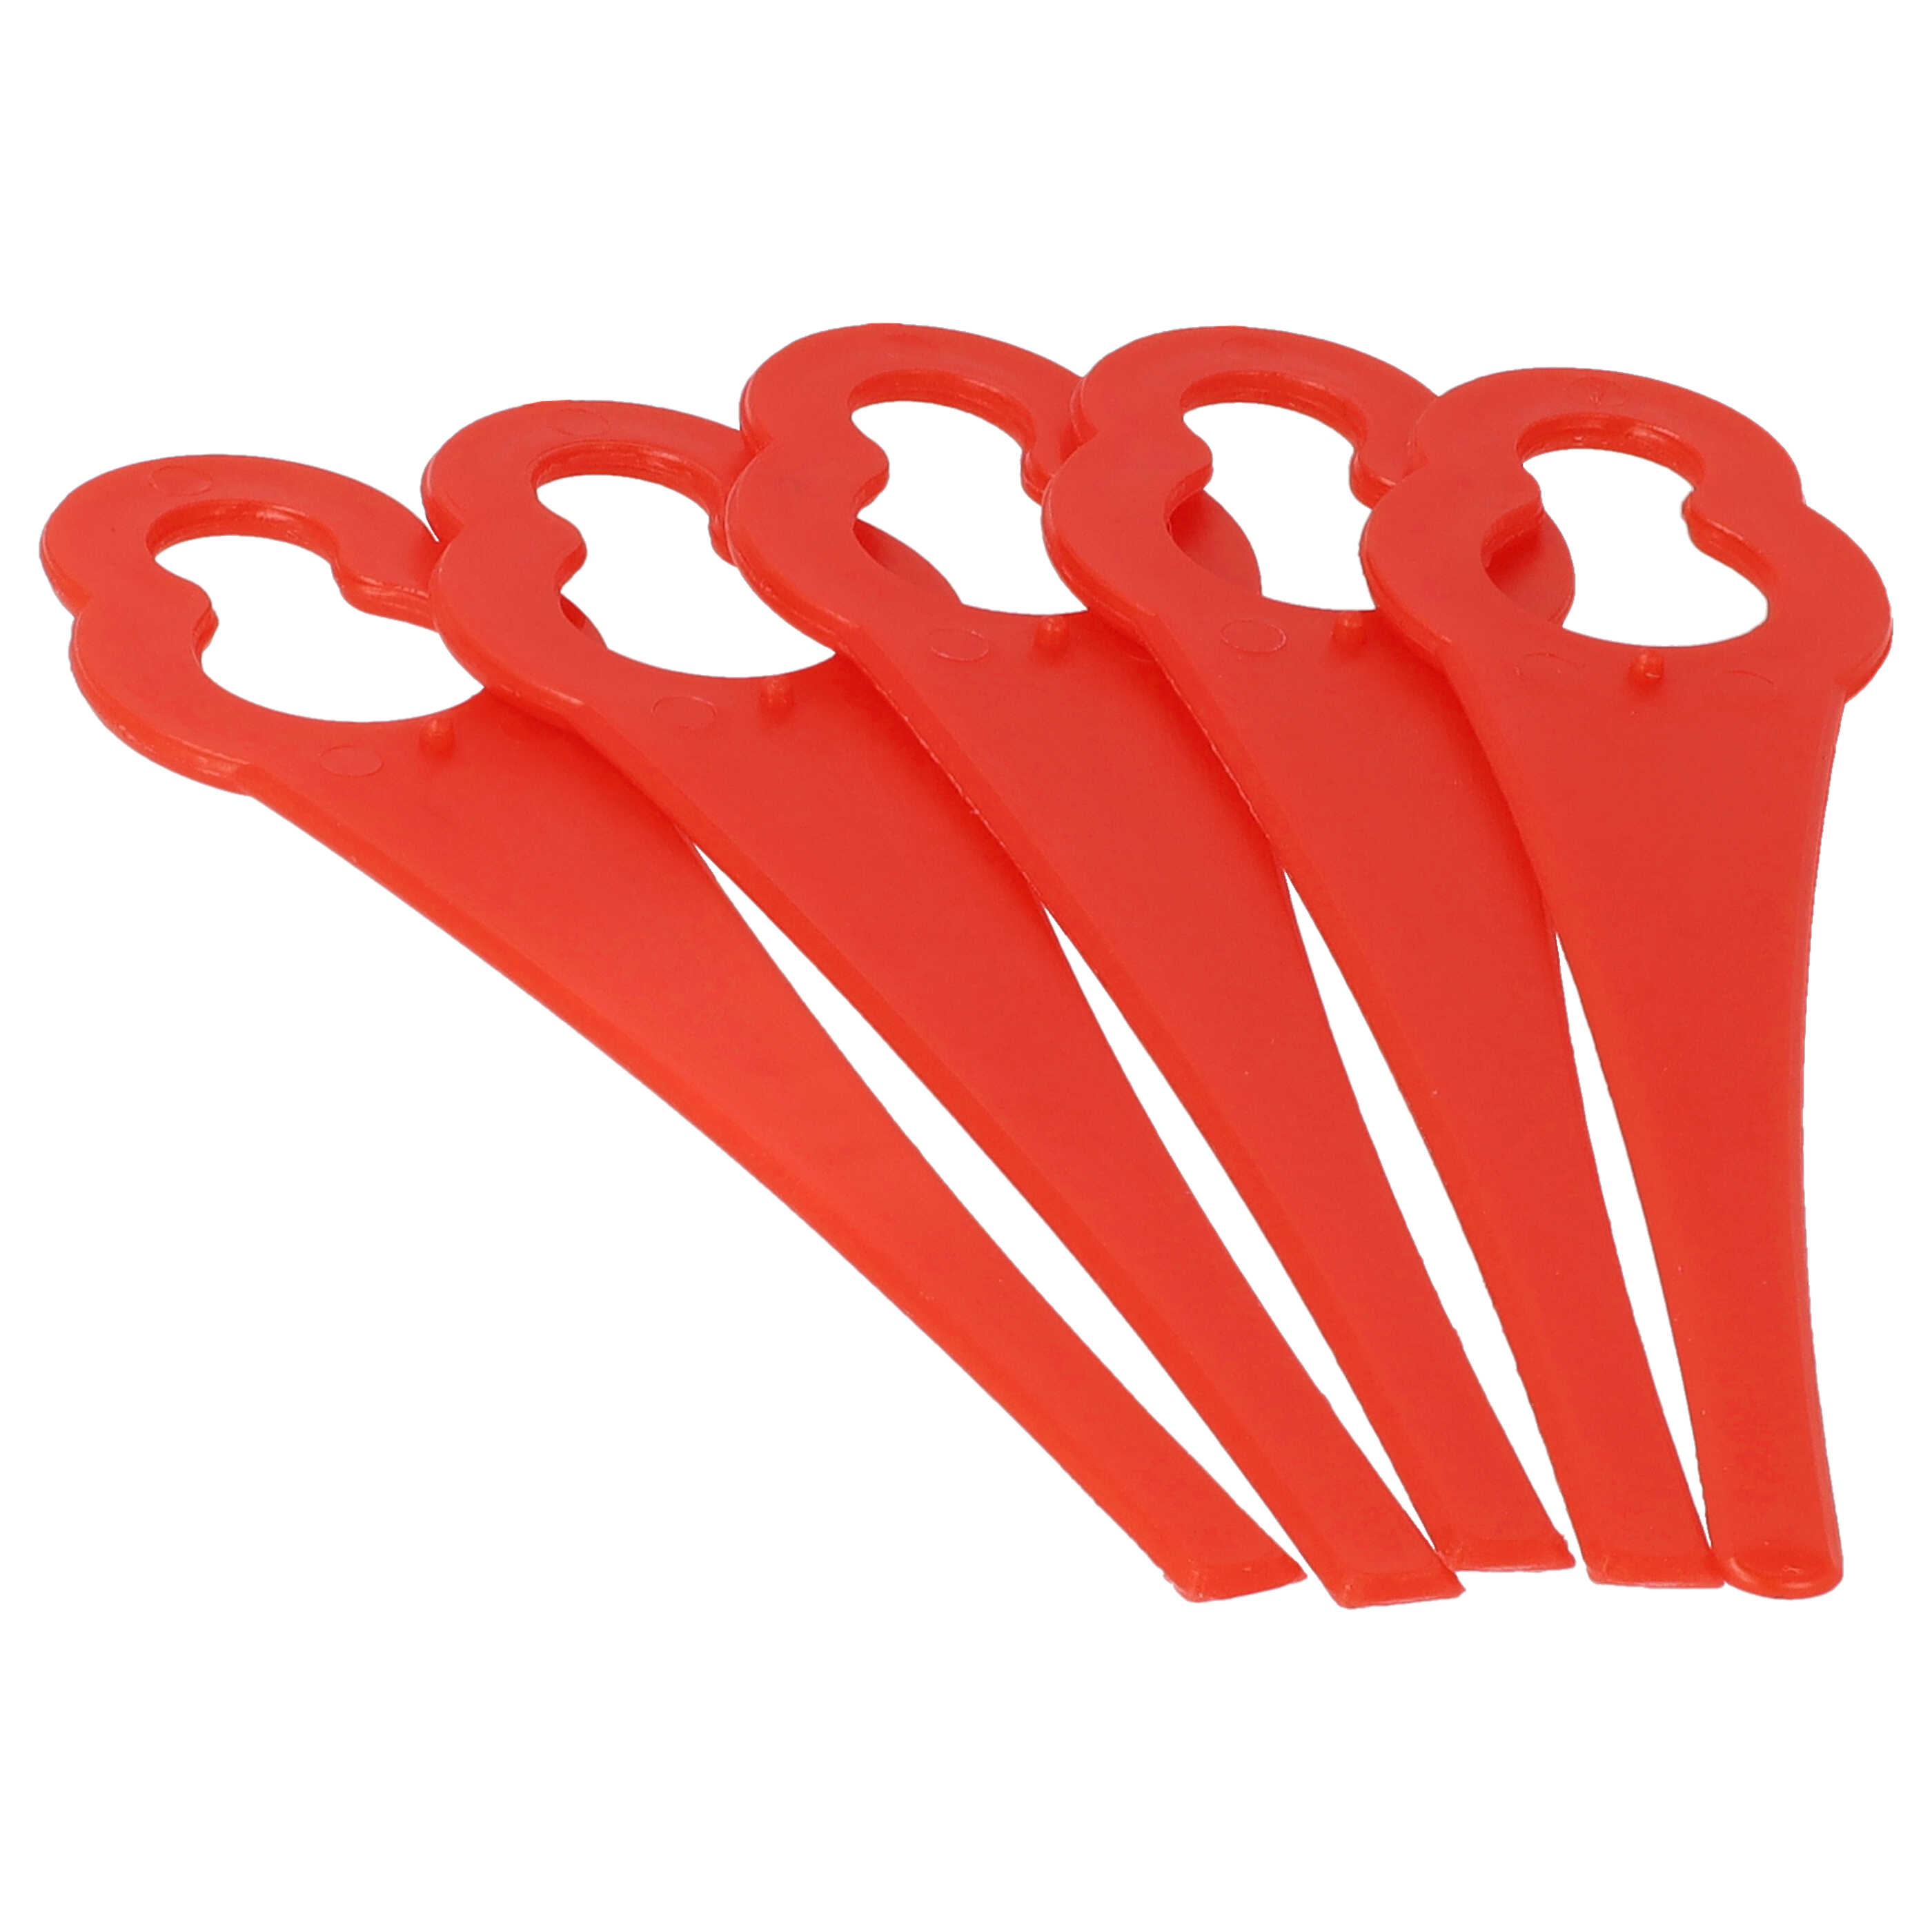 5x Nożyki do podkaszarki Bosch zam. ALM BQ026 - nylon / plastik, czerwony